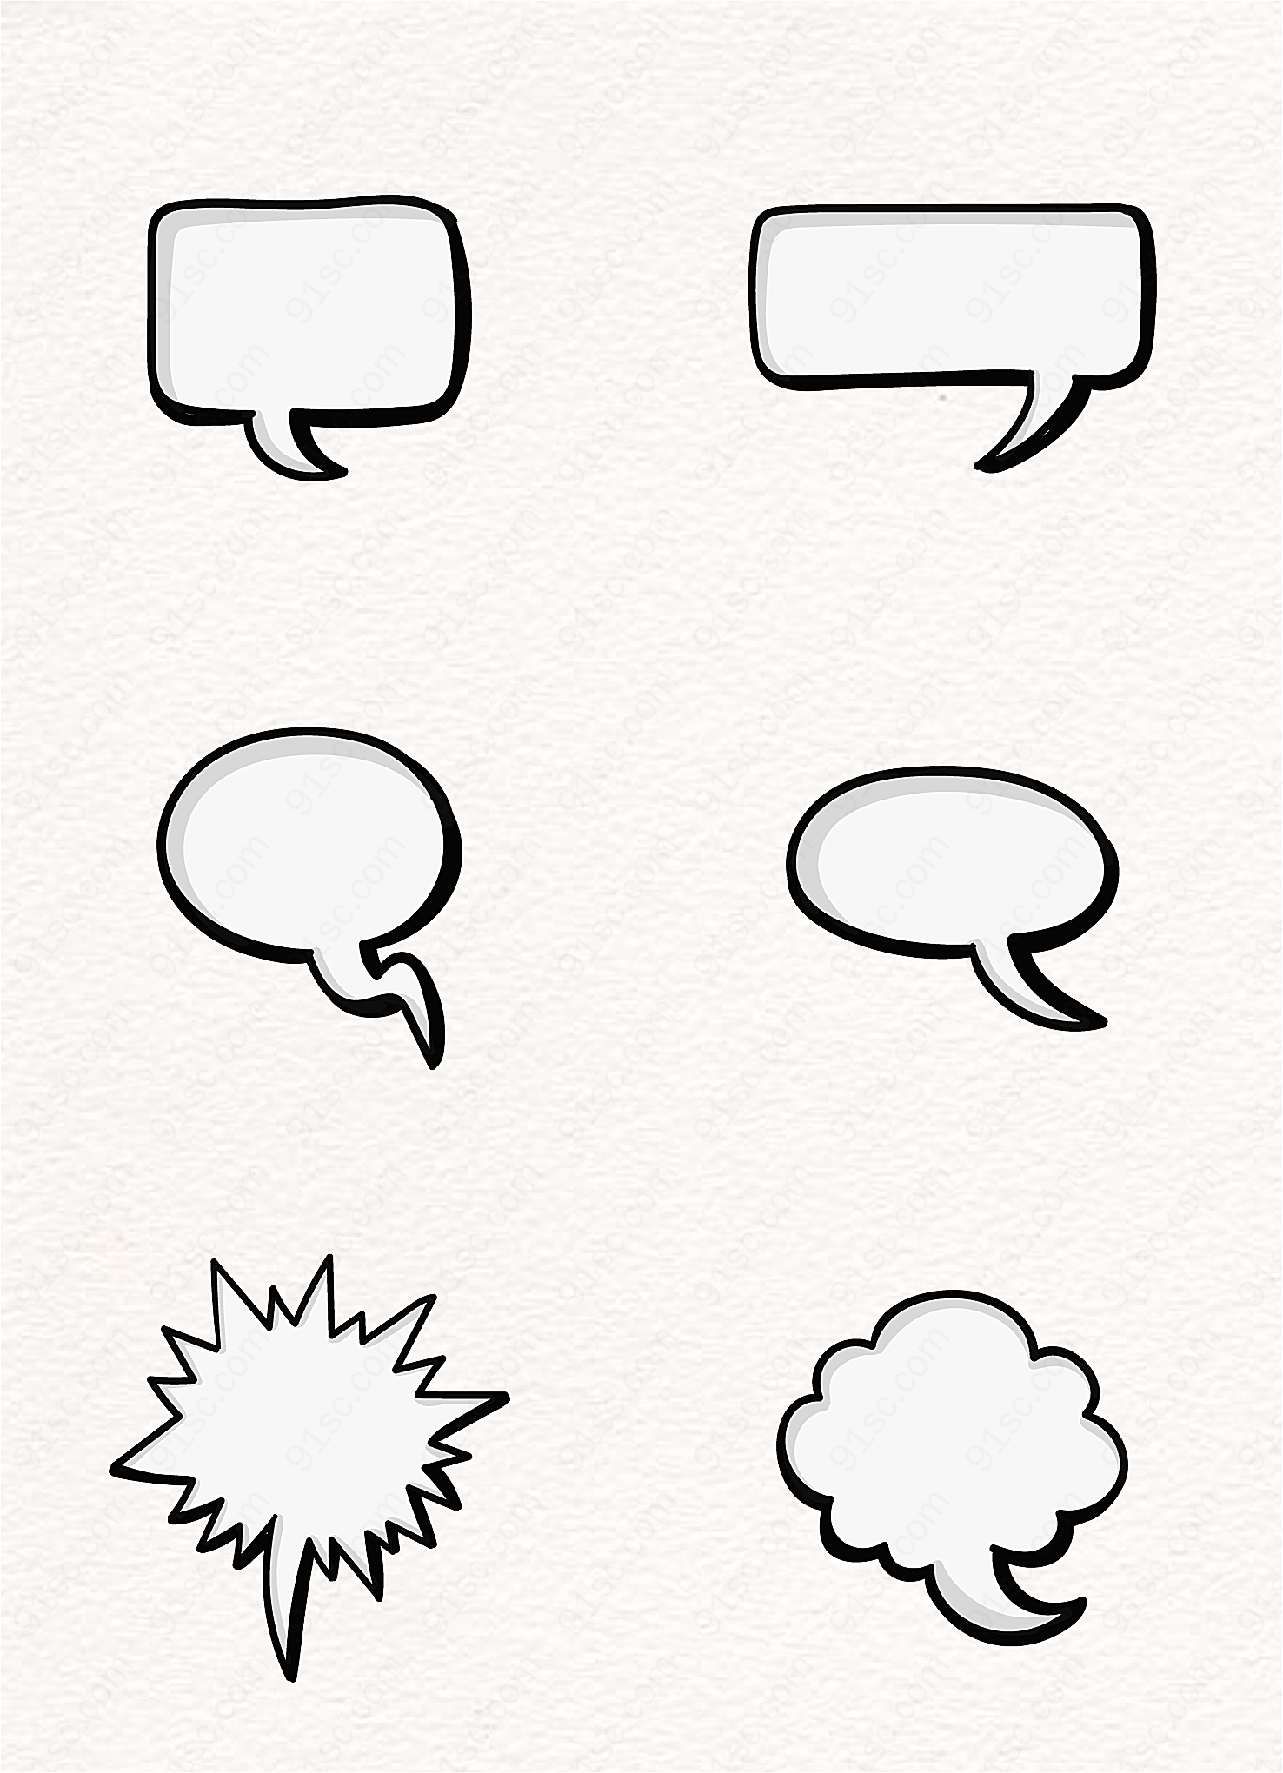 黑白卡通简约空白对话框矢量设计